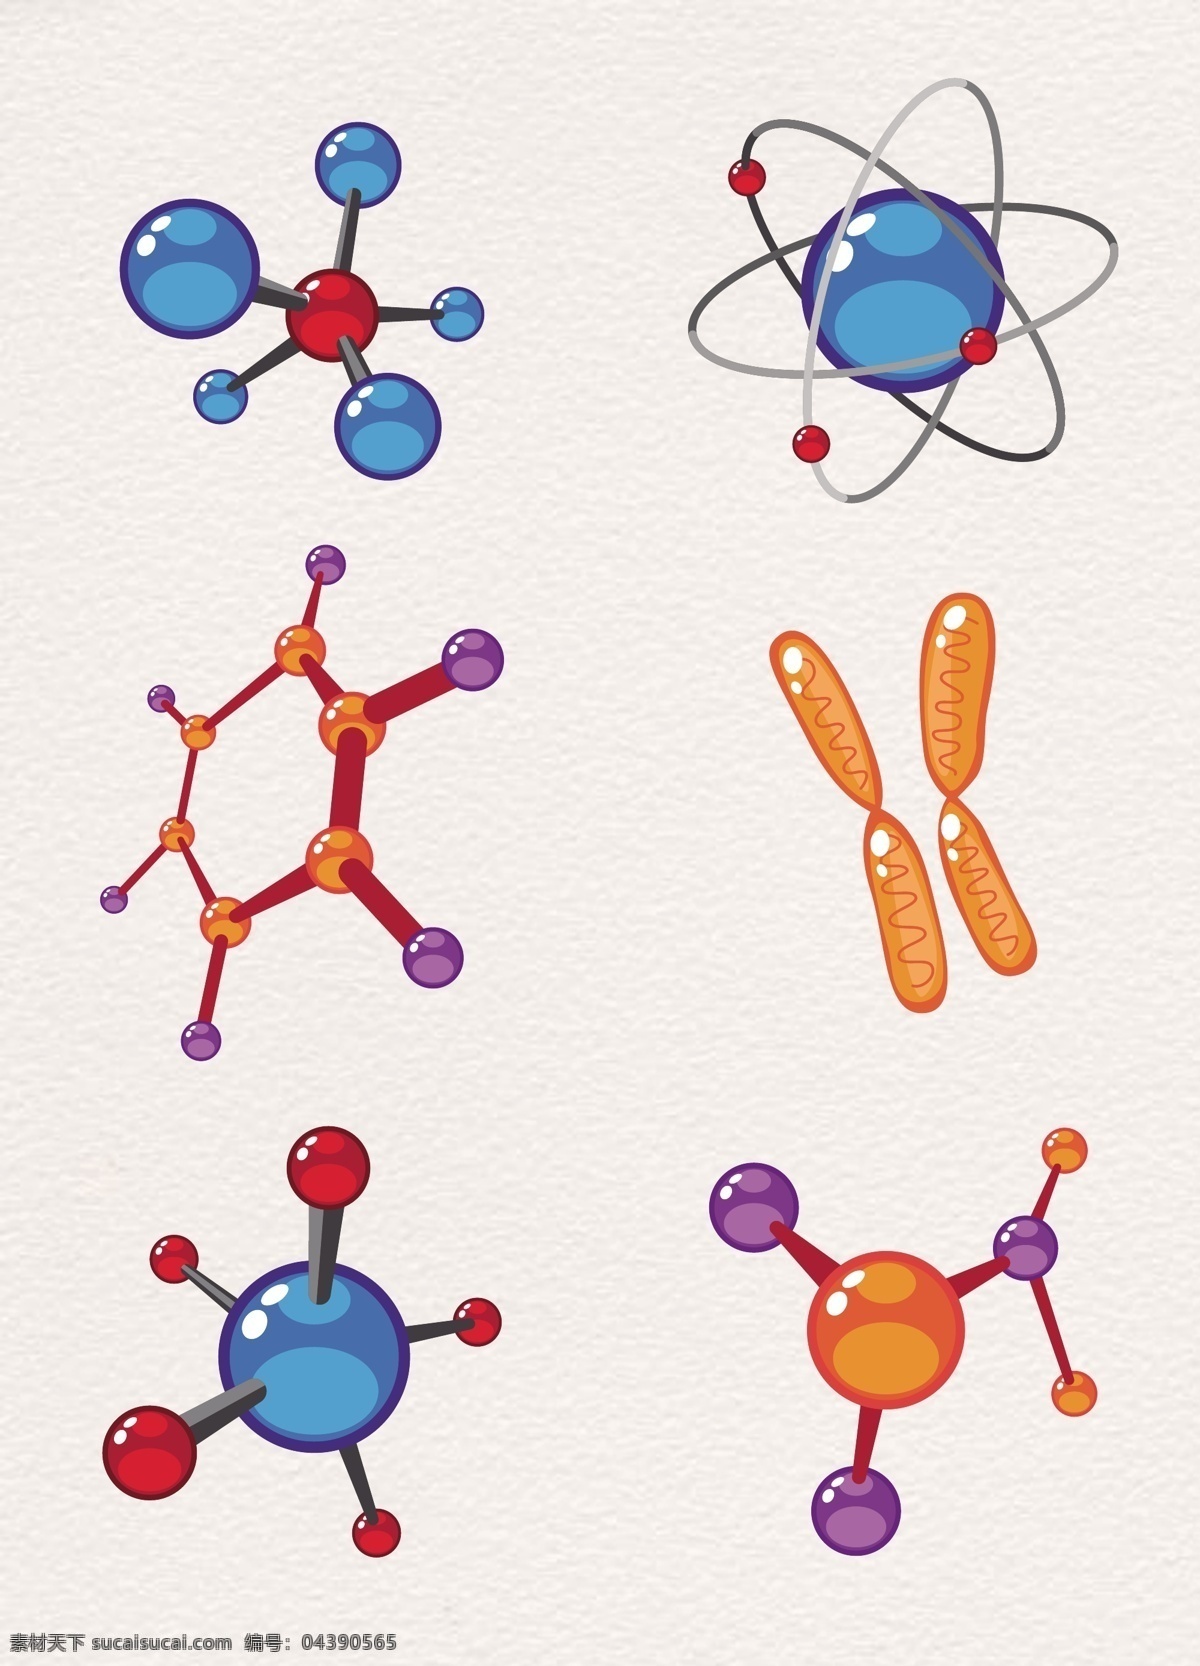 生物 dna 基因 染色体 图标 元素 矢量 生物学 生物研究 手绘